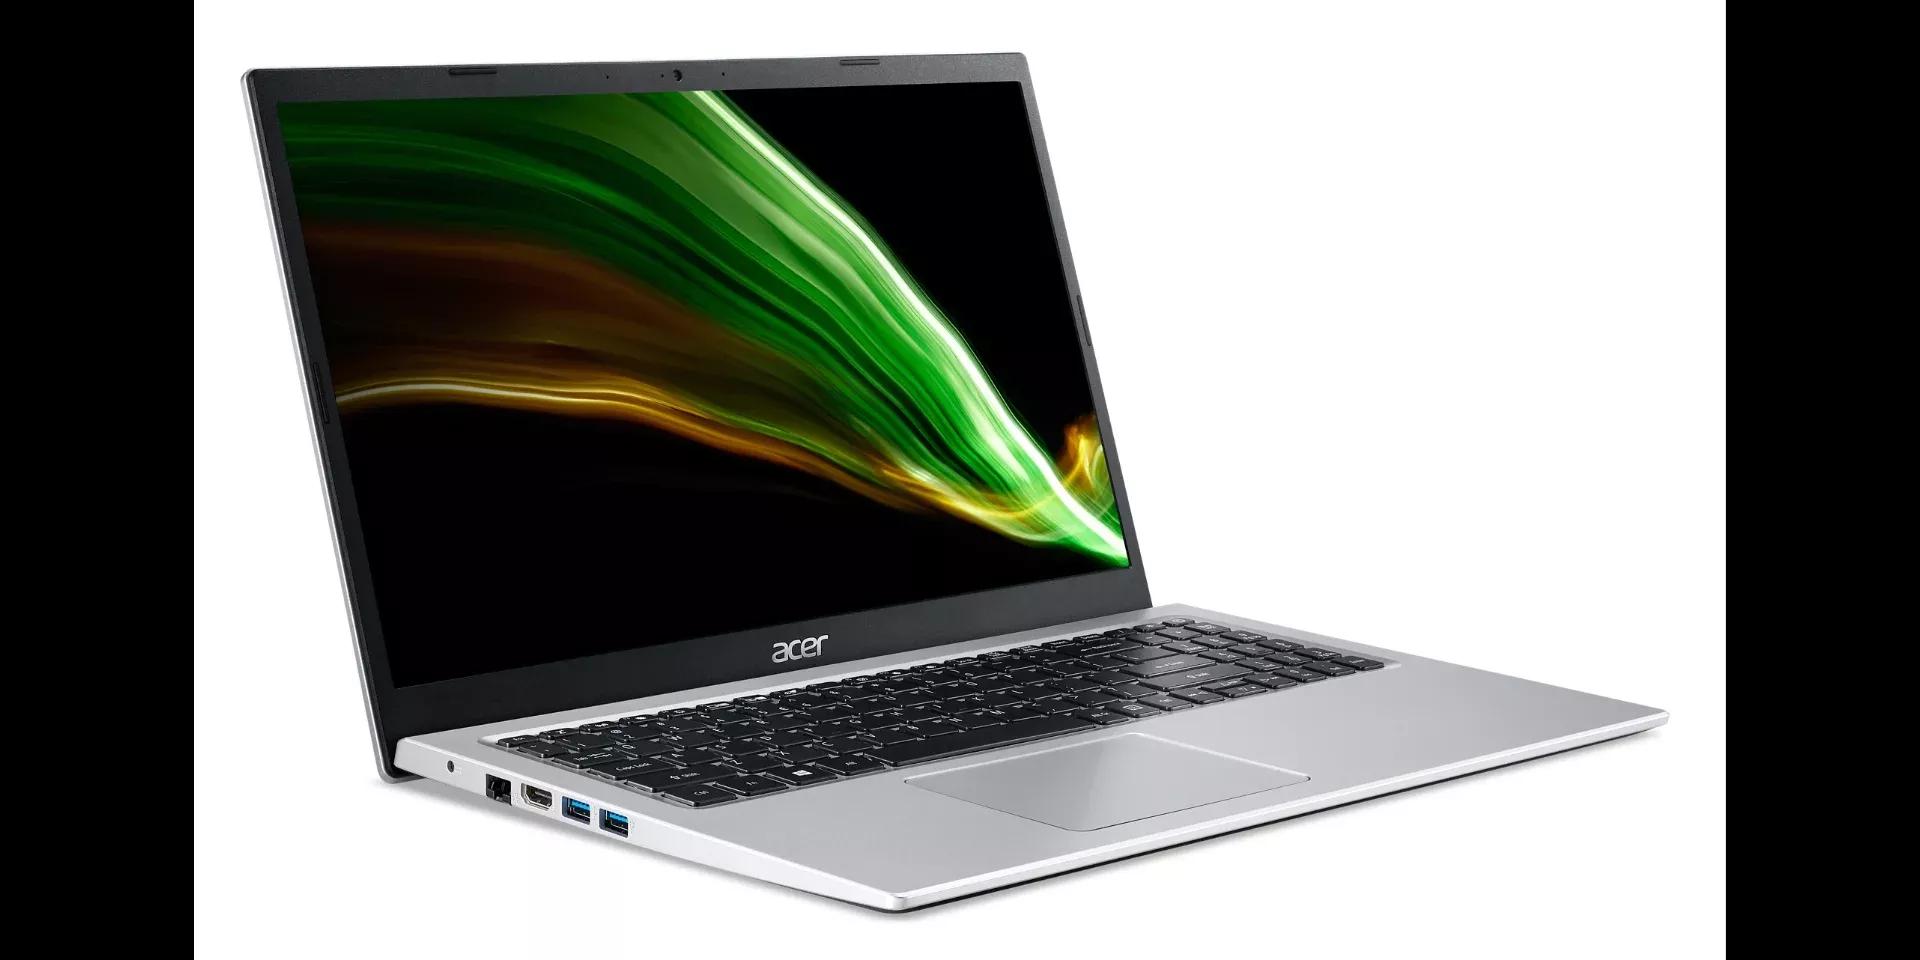 Acer Aspire 3 2021 i3 11Th Gen / 4GB RAM / 1TB HDD / 15.6" FHD Display